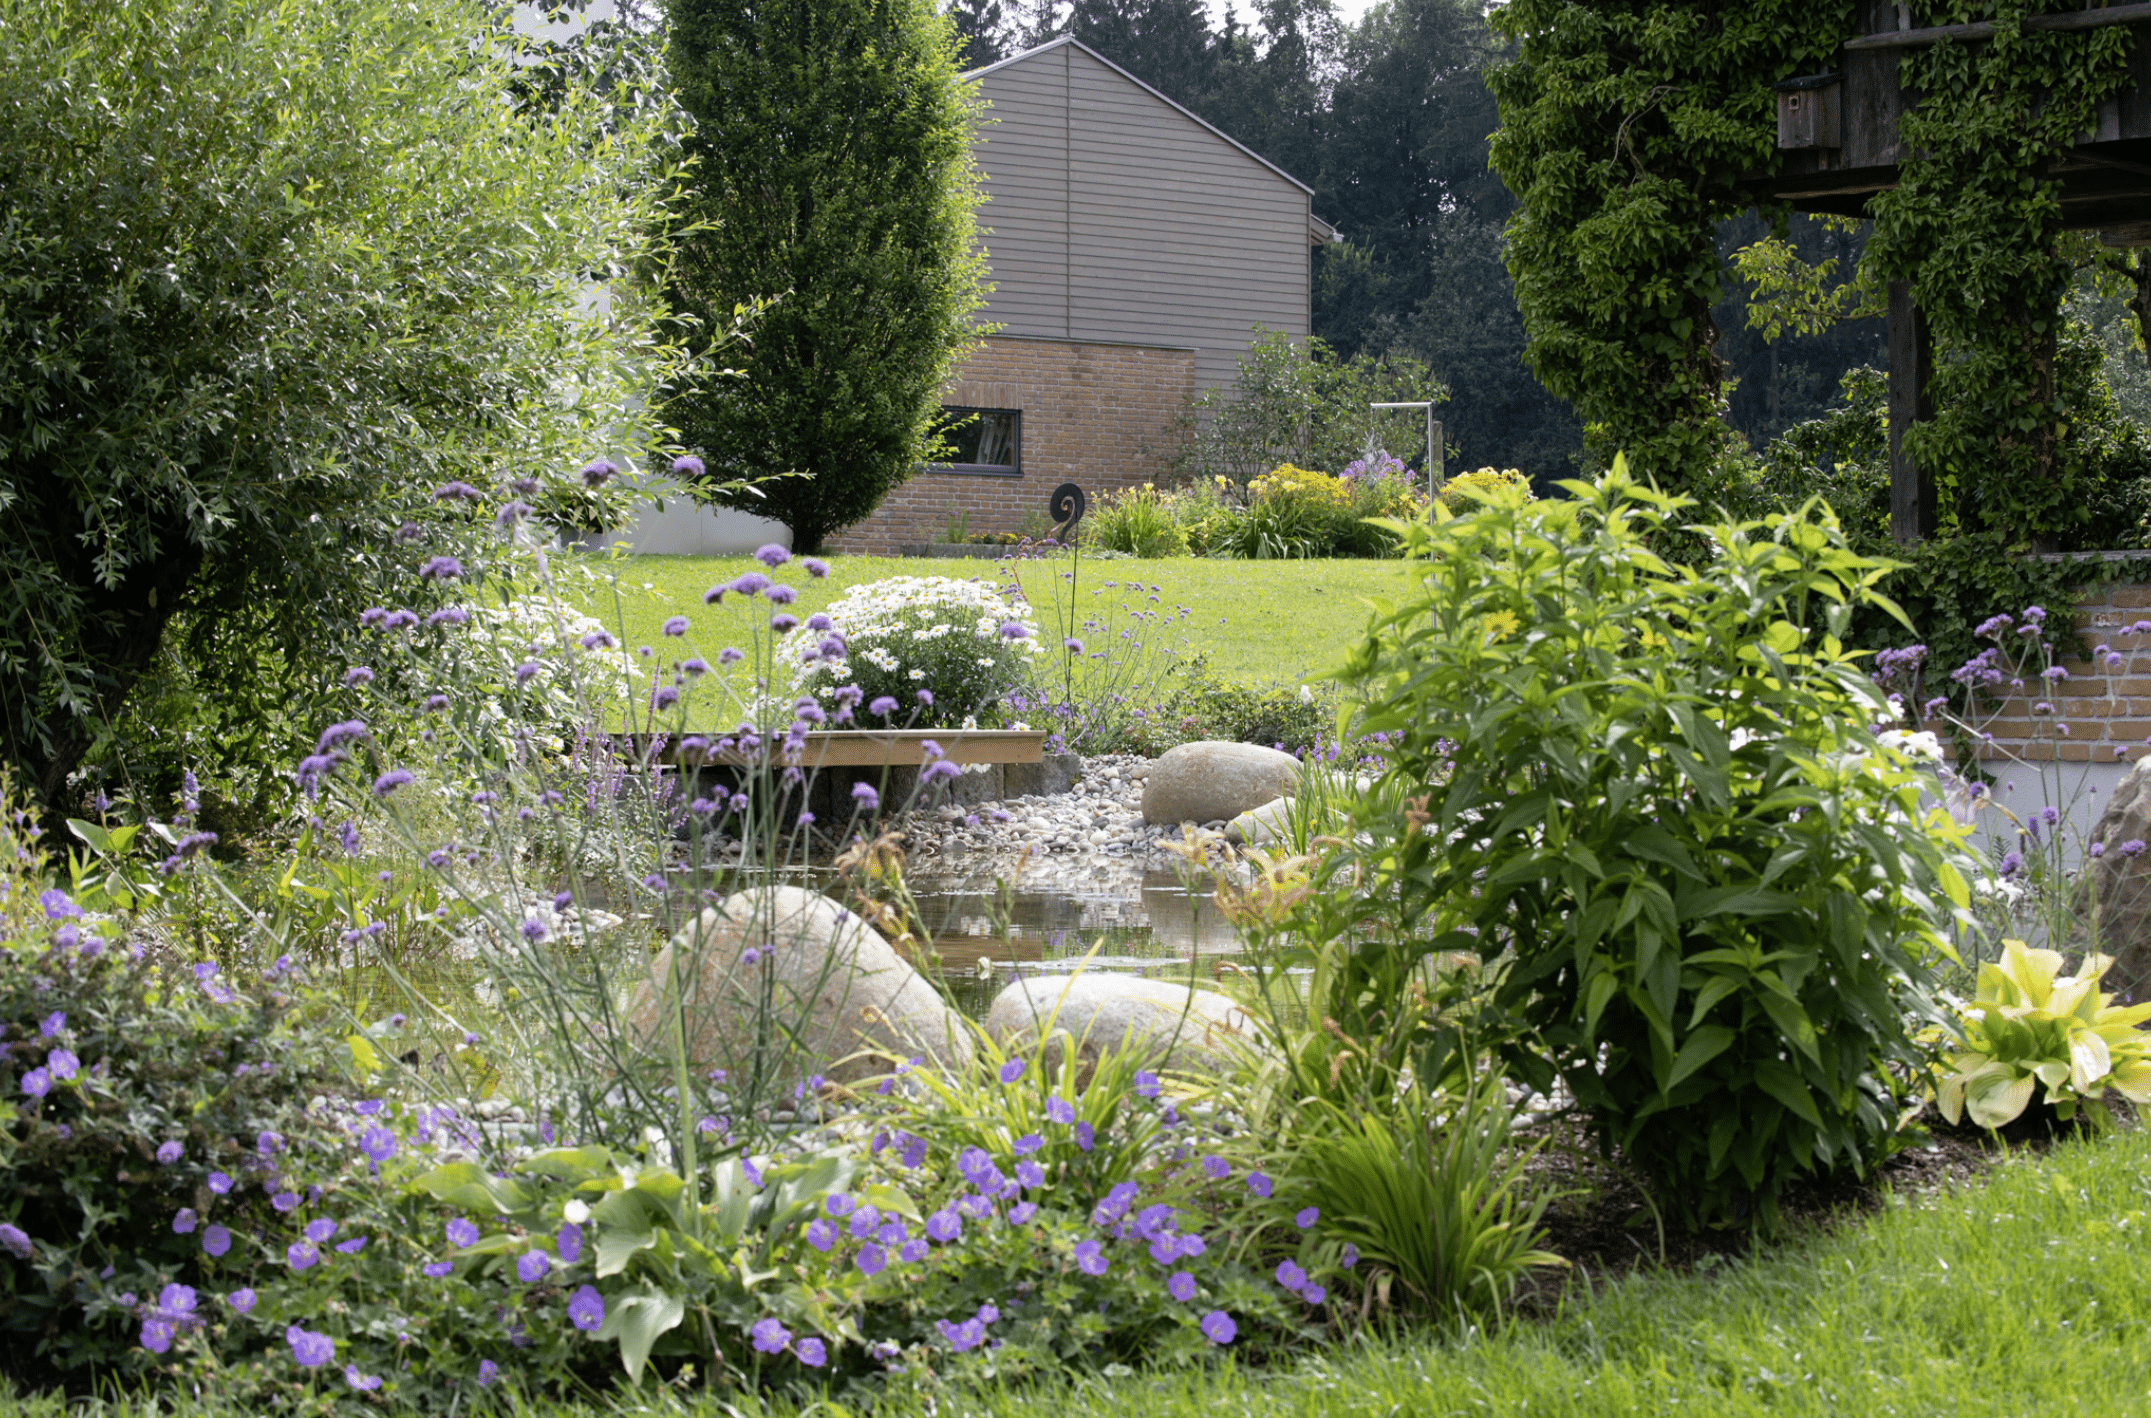 Gartenbau Schmid zeigt die Bepflanzung rund um einen kleinen Teich, verschiedene Blumen, Schilf und Steg.